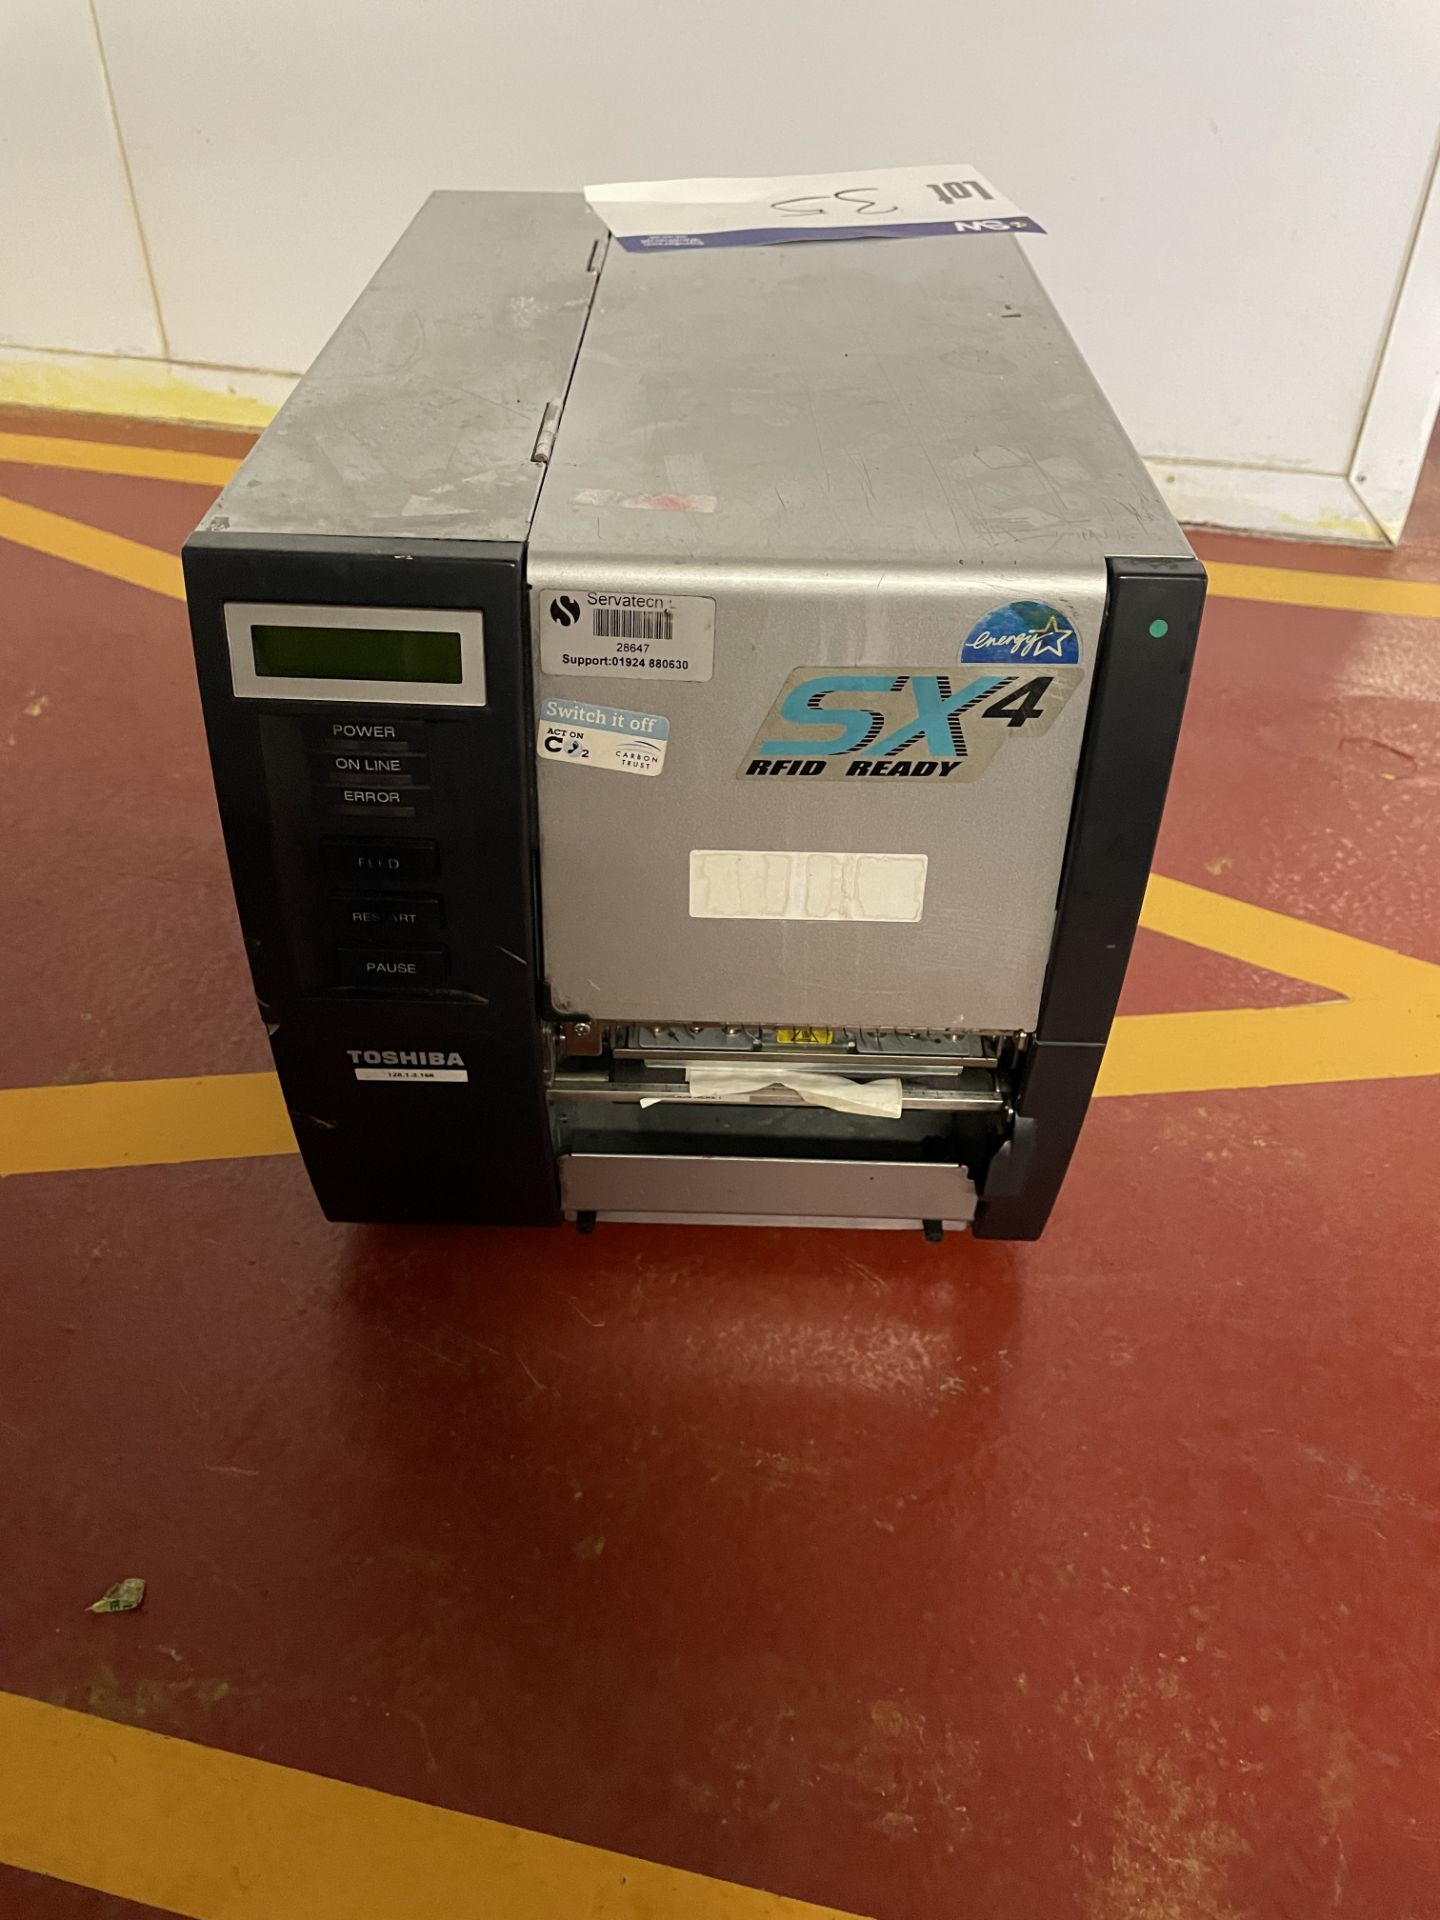 Toshiba SX4 RFID READY Label Printer, serial no. 2